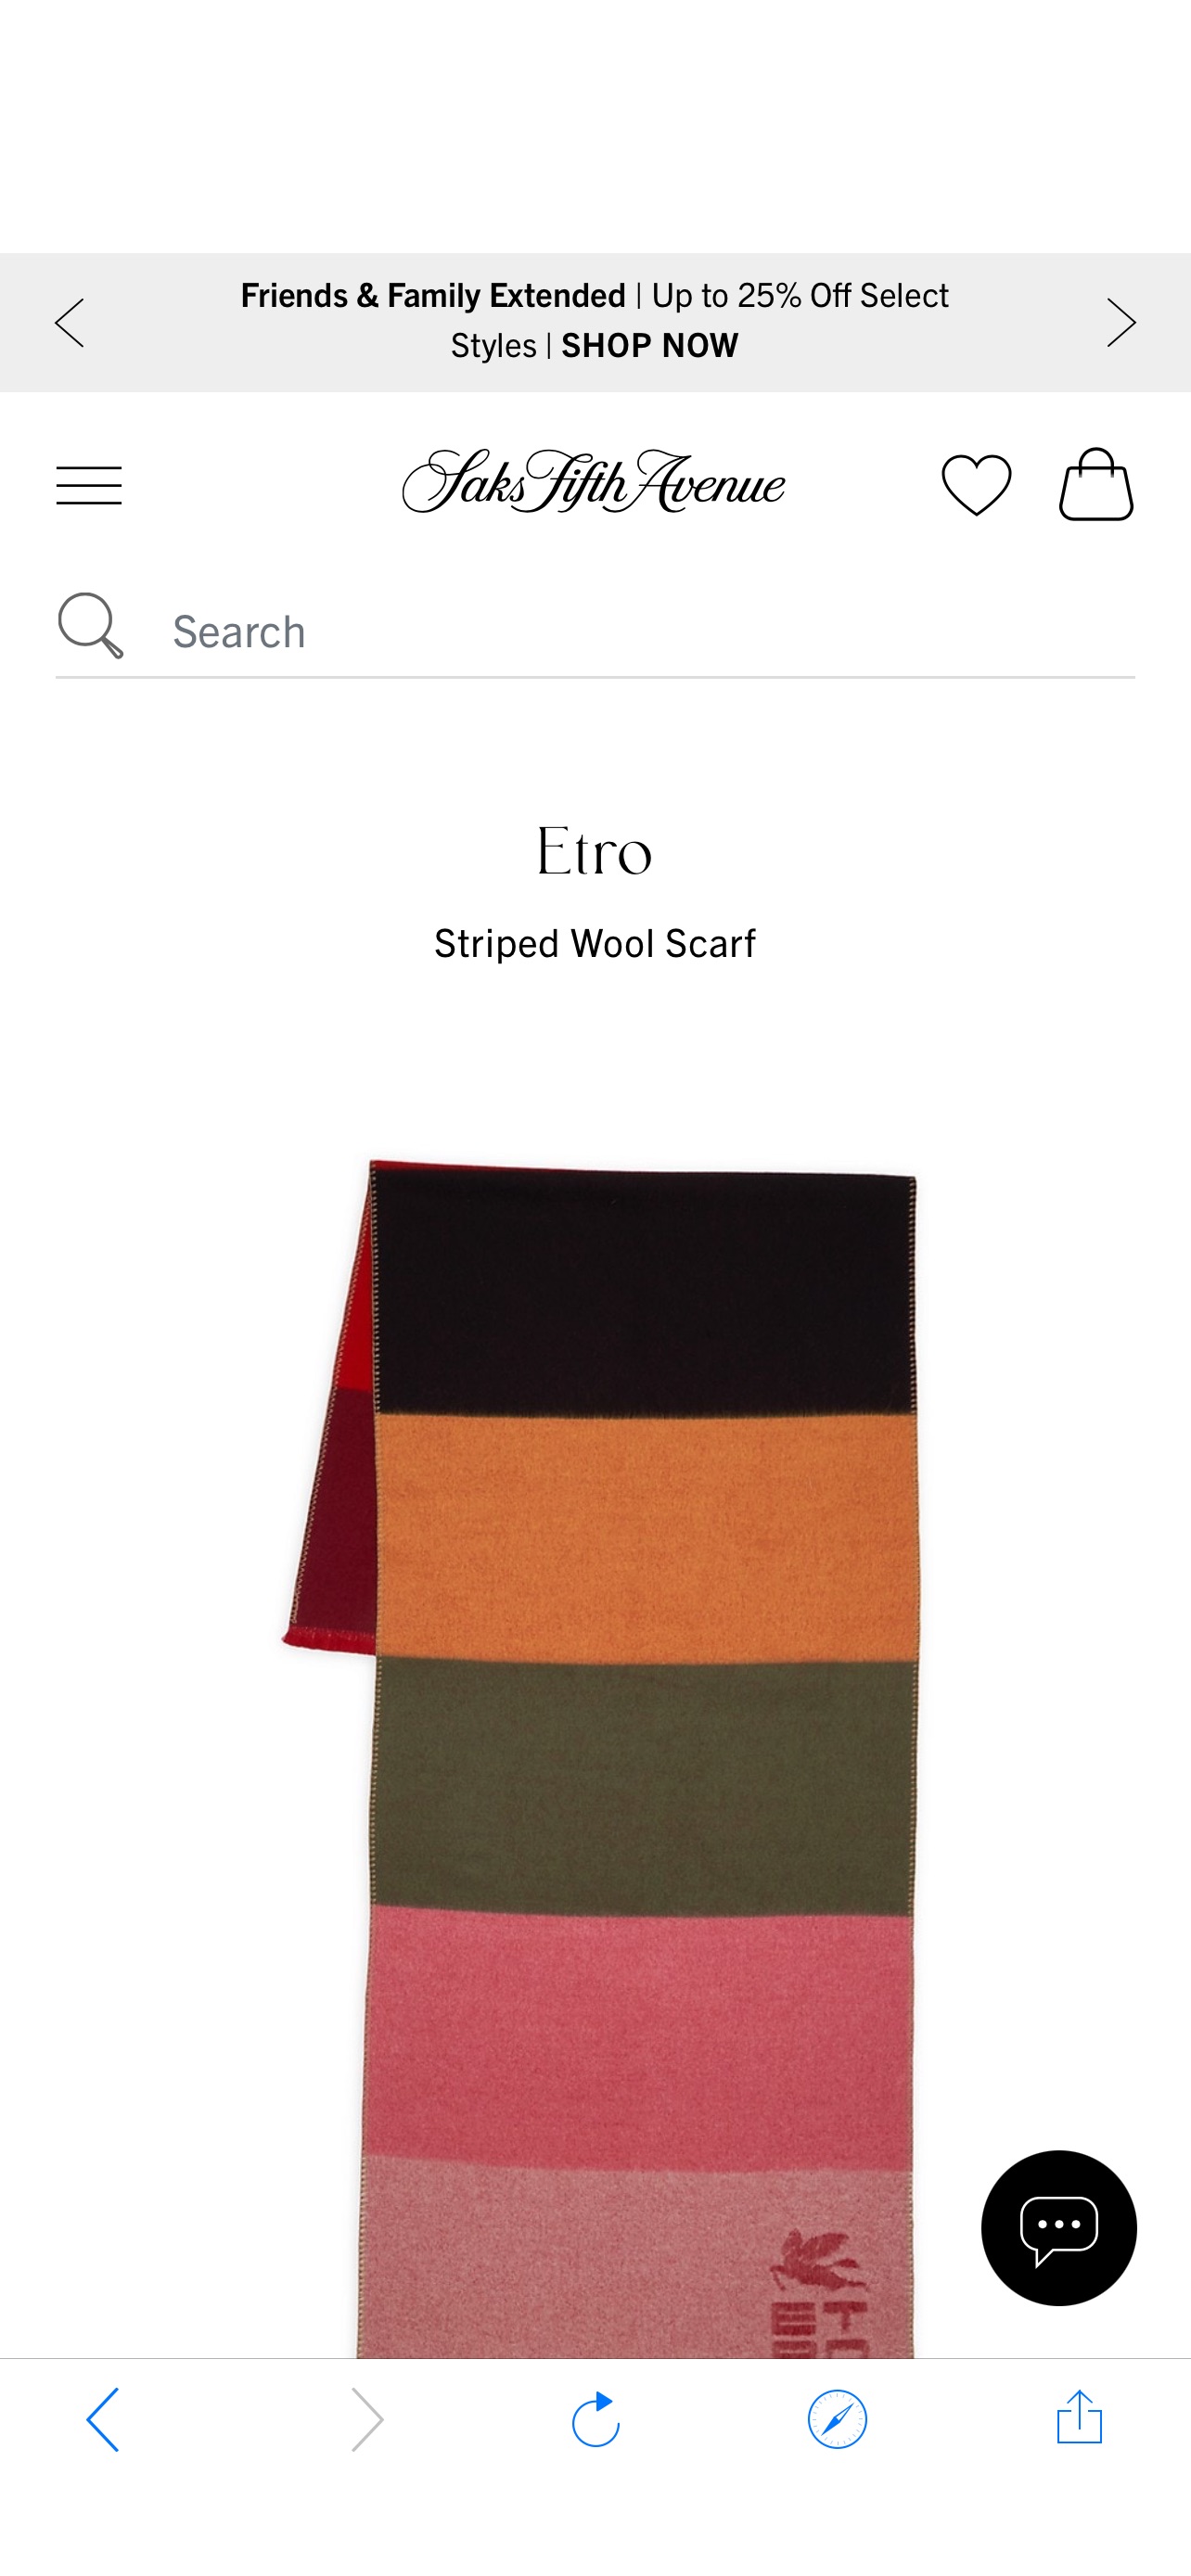 羊毛围巾Shop Etro Striped Wool Scarf | Saks Fifth Avenue